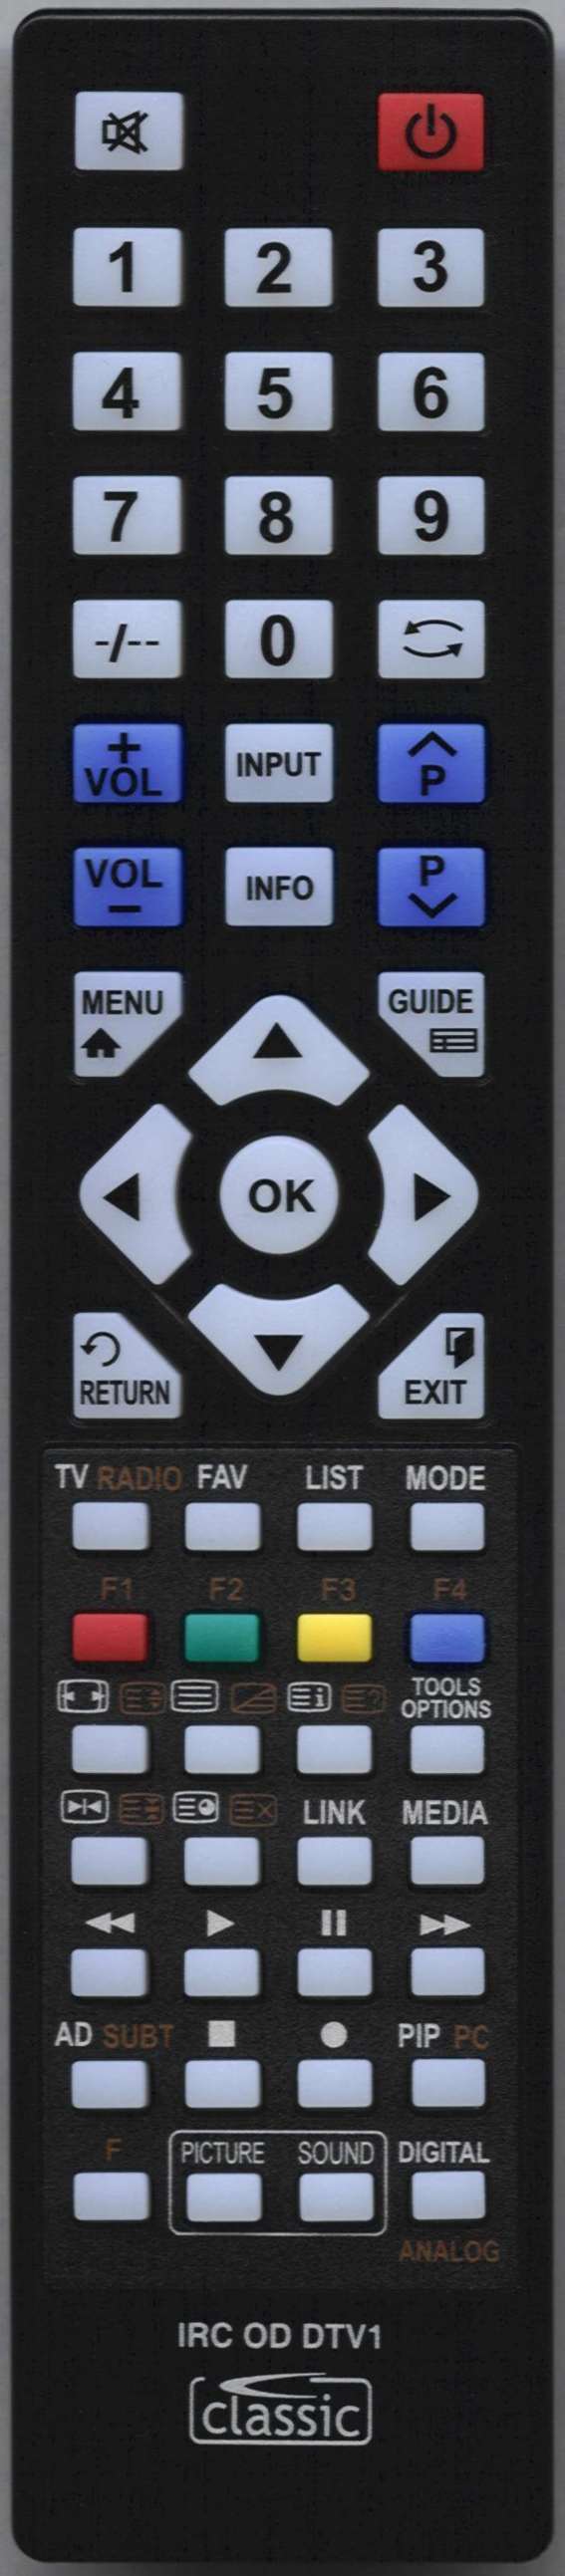 DGM CSP-OTH-MK2272RCM Remote Control